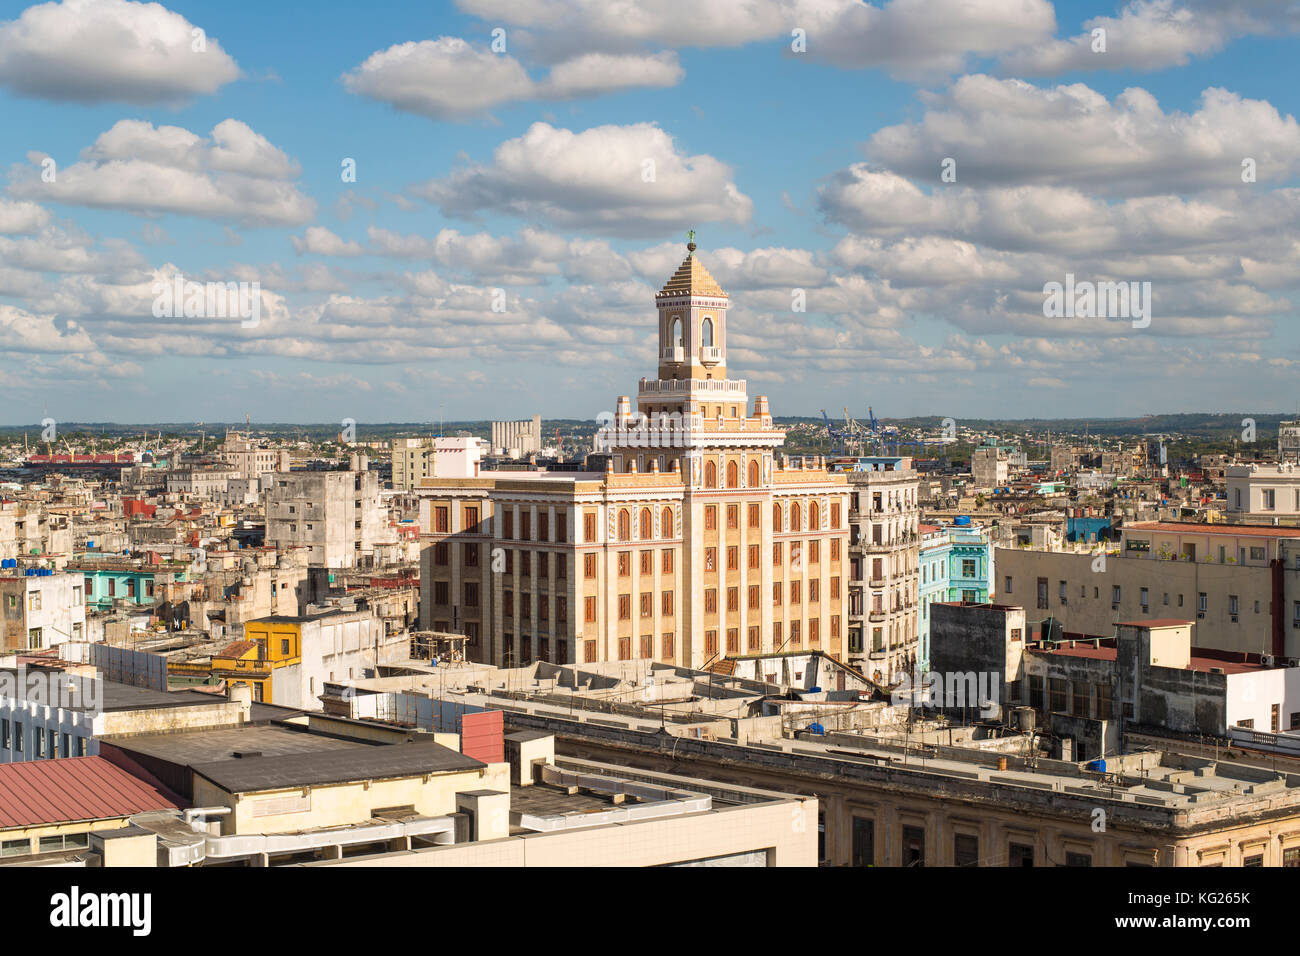 Architektur von einem erhöhten Blick in der Nähe von Malecon, Havanna, Kuba, Westindien und Mittelamerika Stockfoto